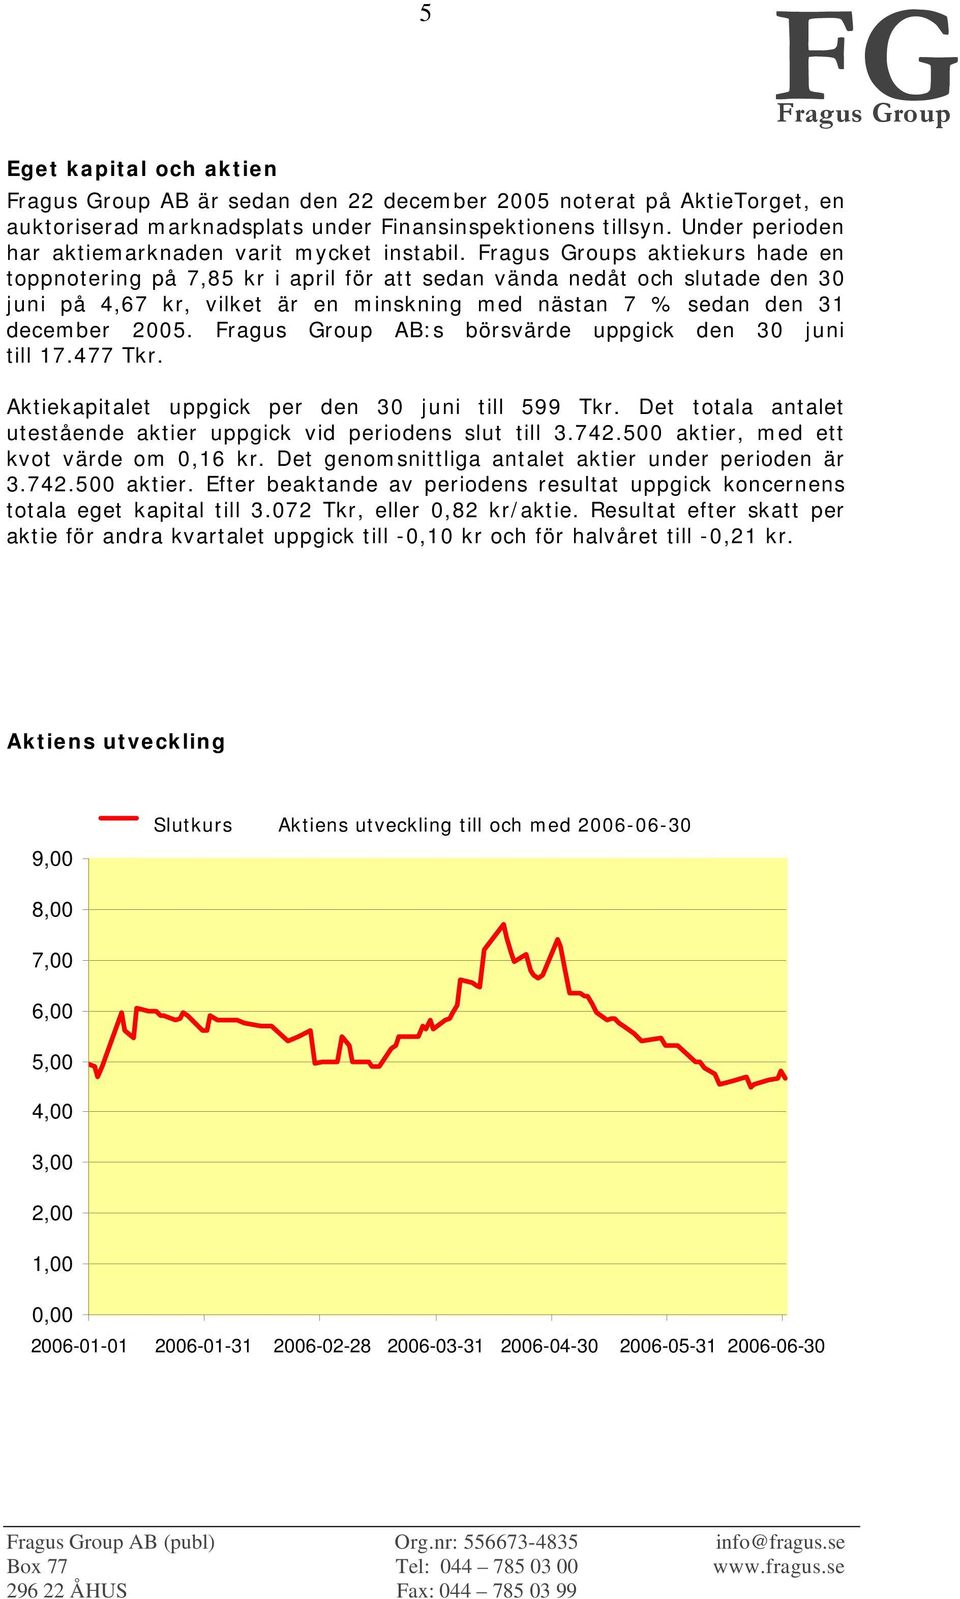 s aktiekurs hade en toppnotering på 7,85 kr i april för att sedan vända nedåt och slutade den 30 juni på 4,67 kr, vilket är en minskning med nästan 7 % sedan den 31 december 2005.